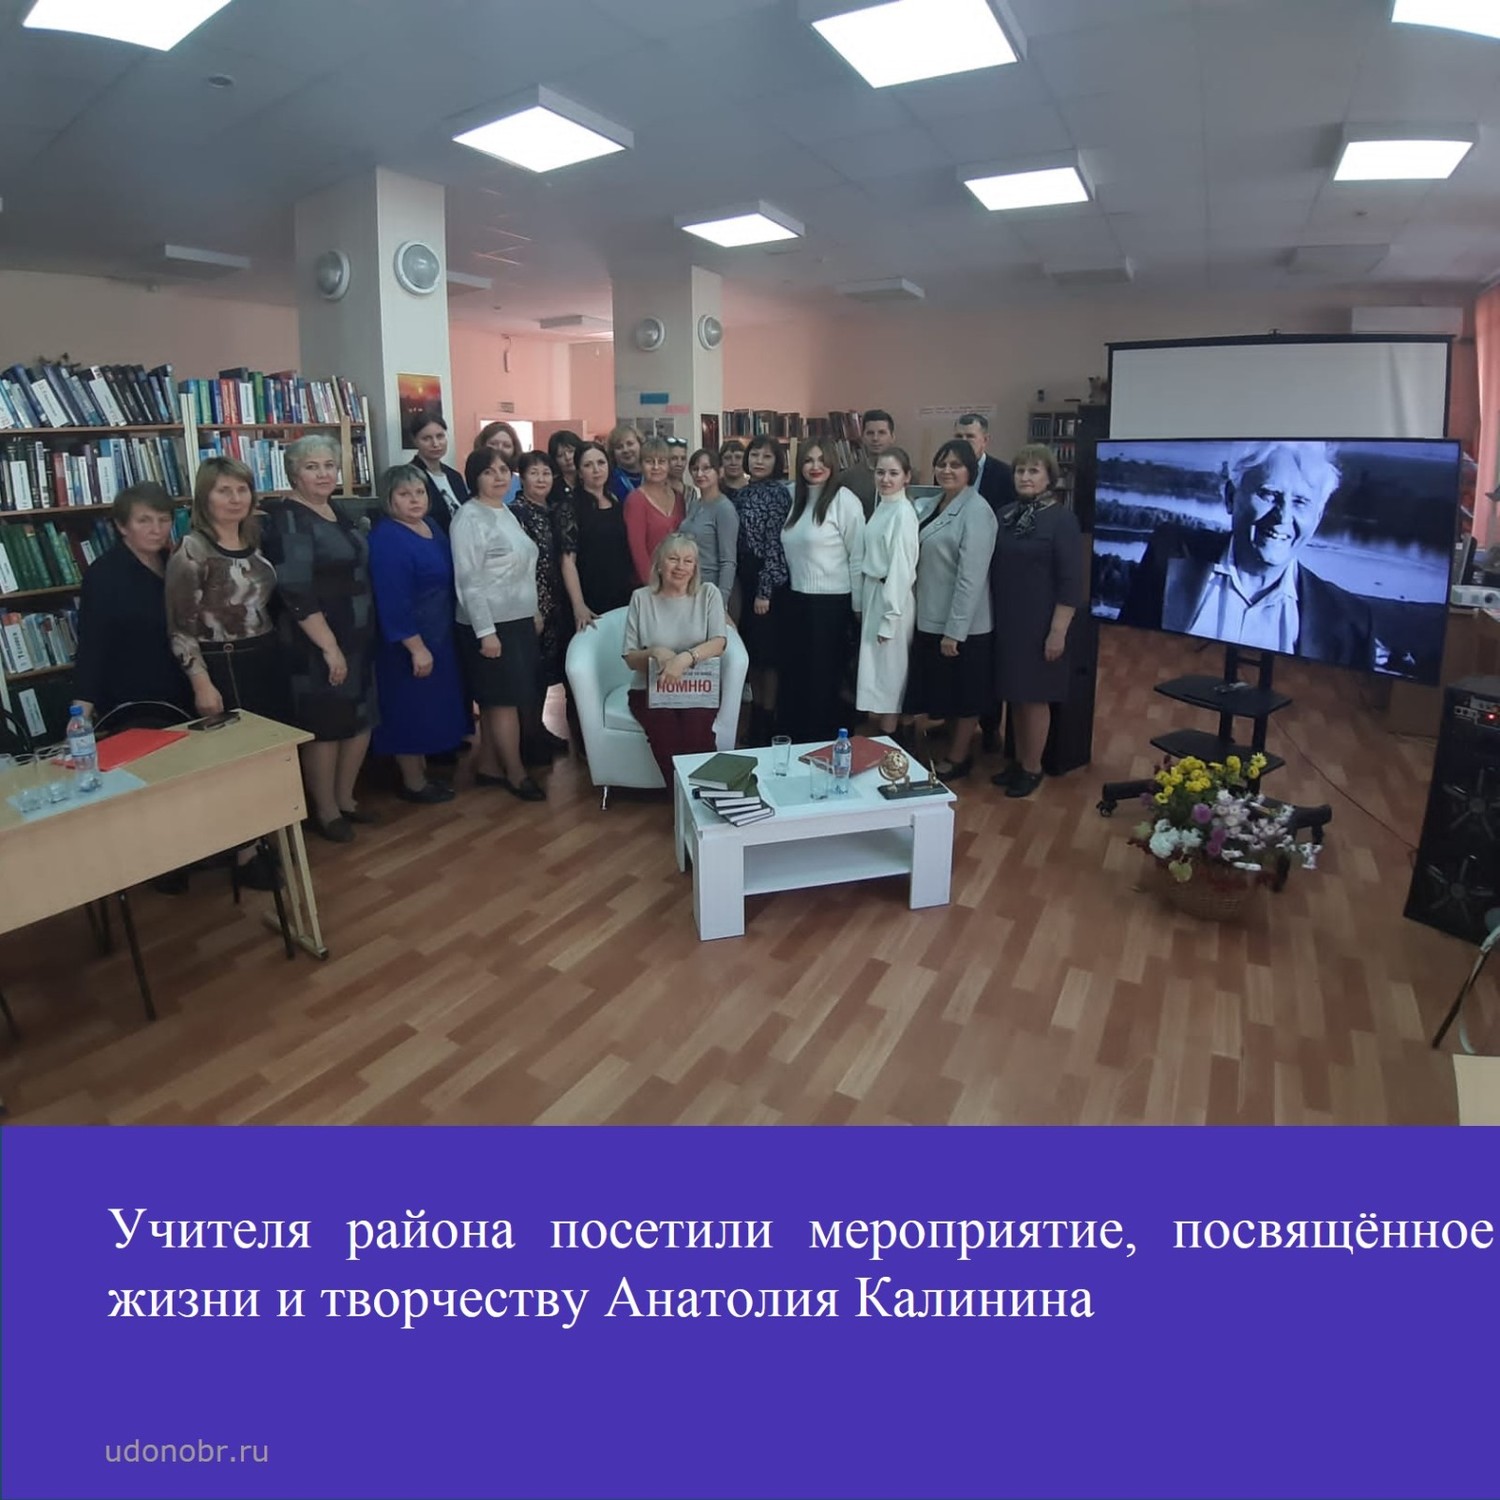 Учителя района посетили мероприятие, посвященное жизни и творчеству Анатолия Калинина